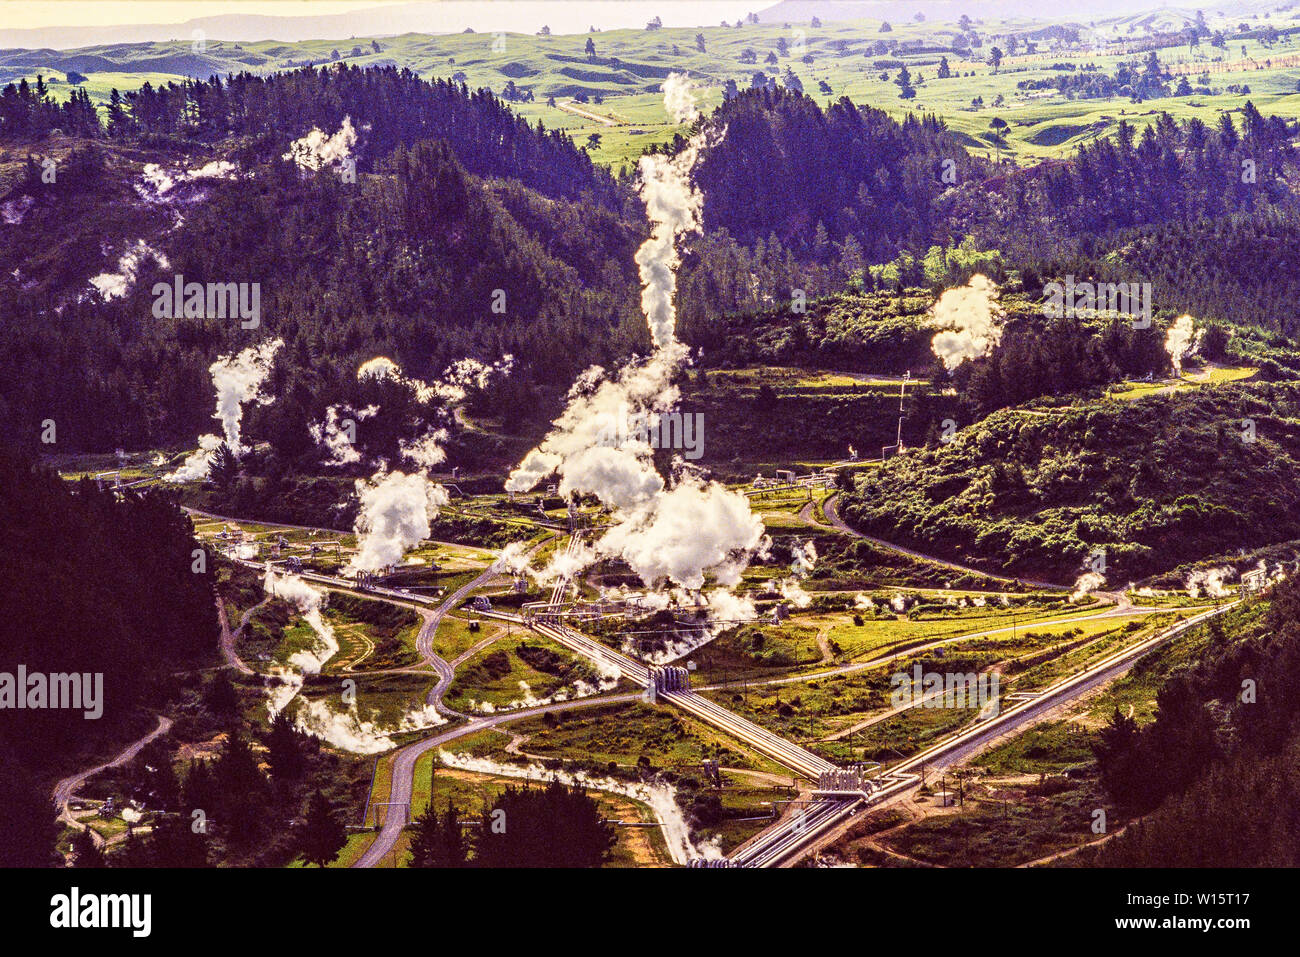 Neuseeland, Nordinsel. Das wairakei Power Station ist ein geothermisches Kraftwerk in der Nähe der Wairakei geothermische Feld in Neuseeland. Wairakei liegt i Stockfoto